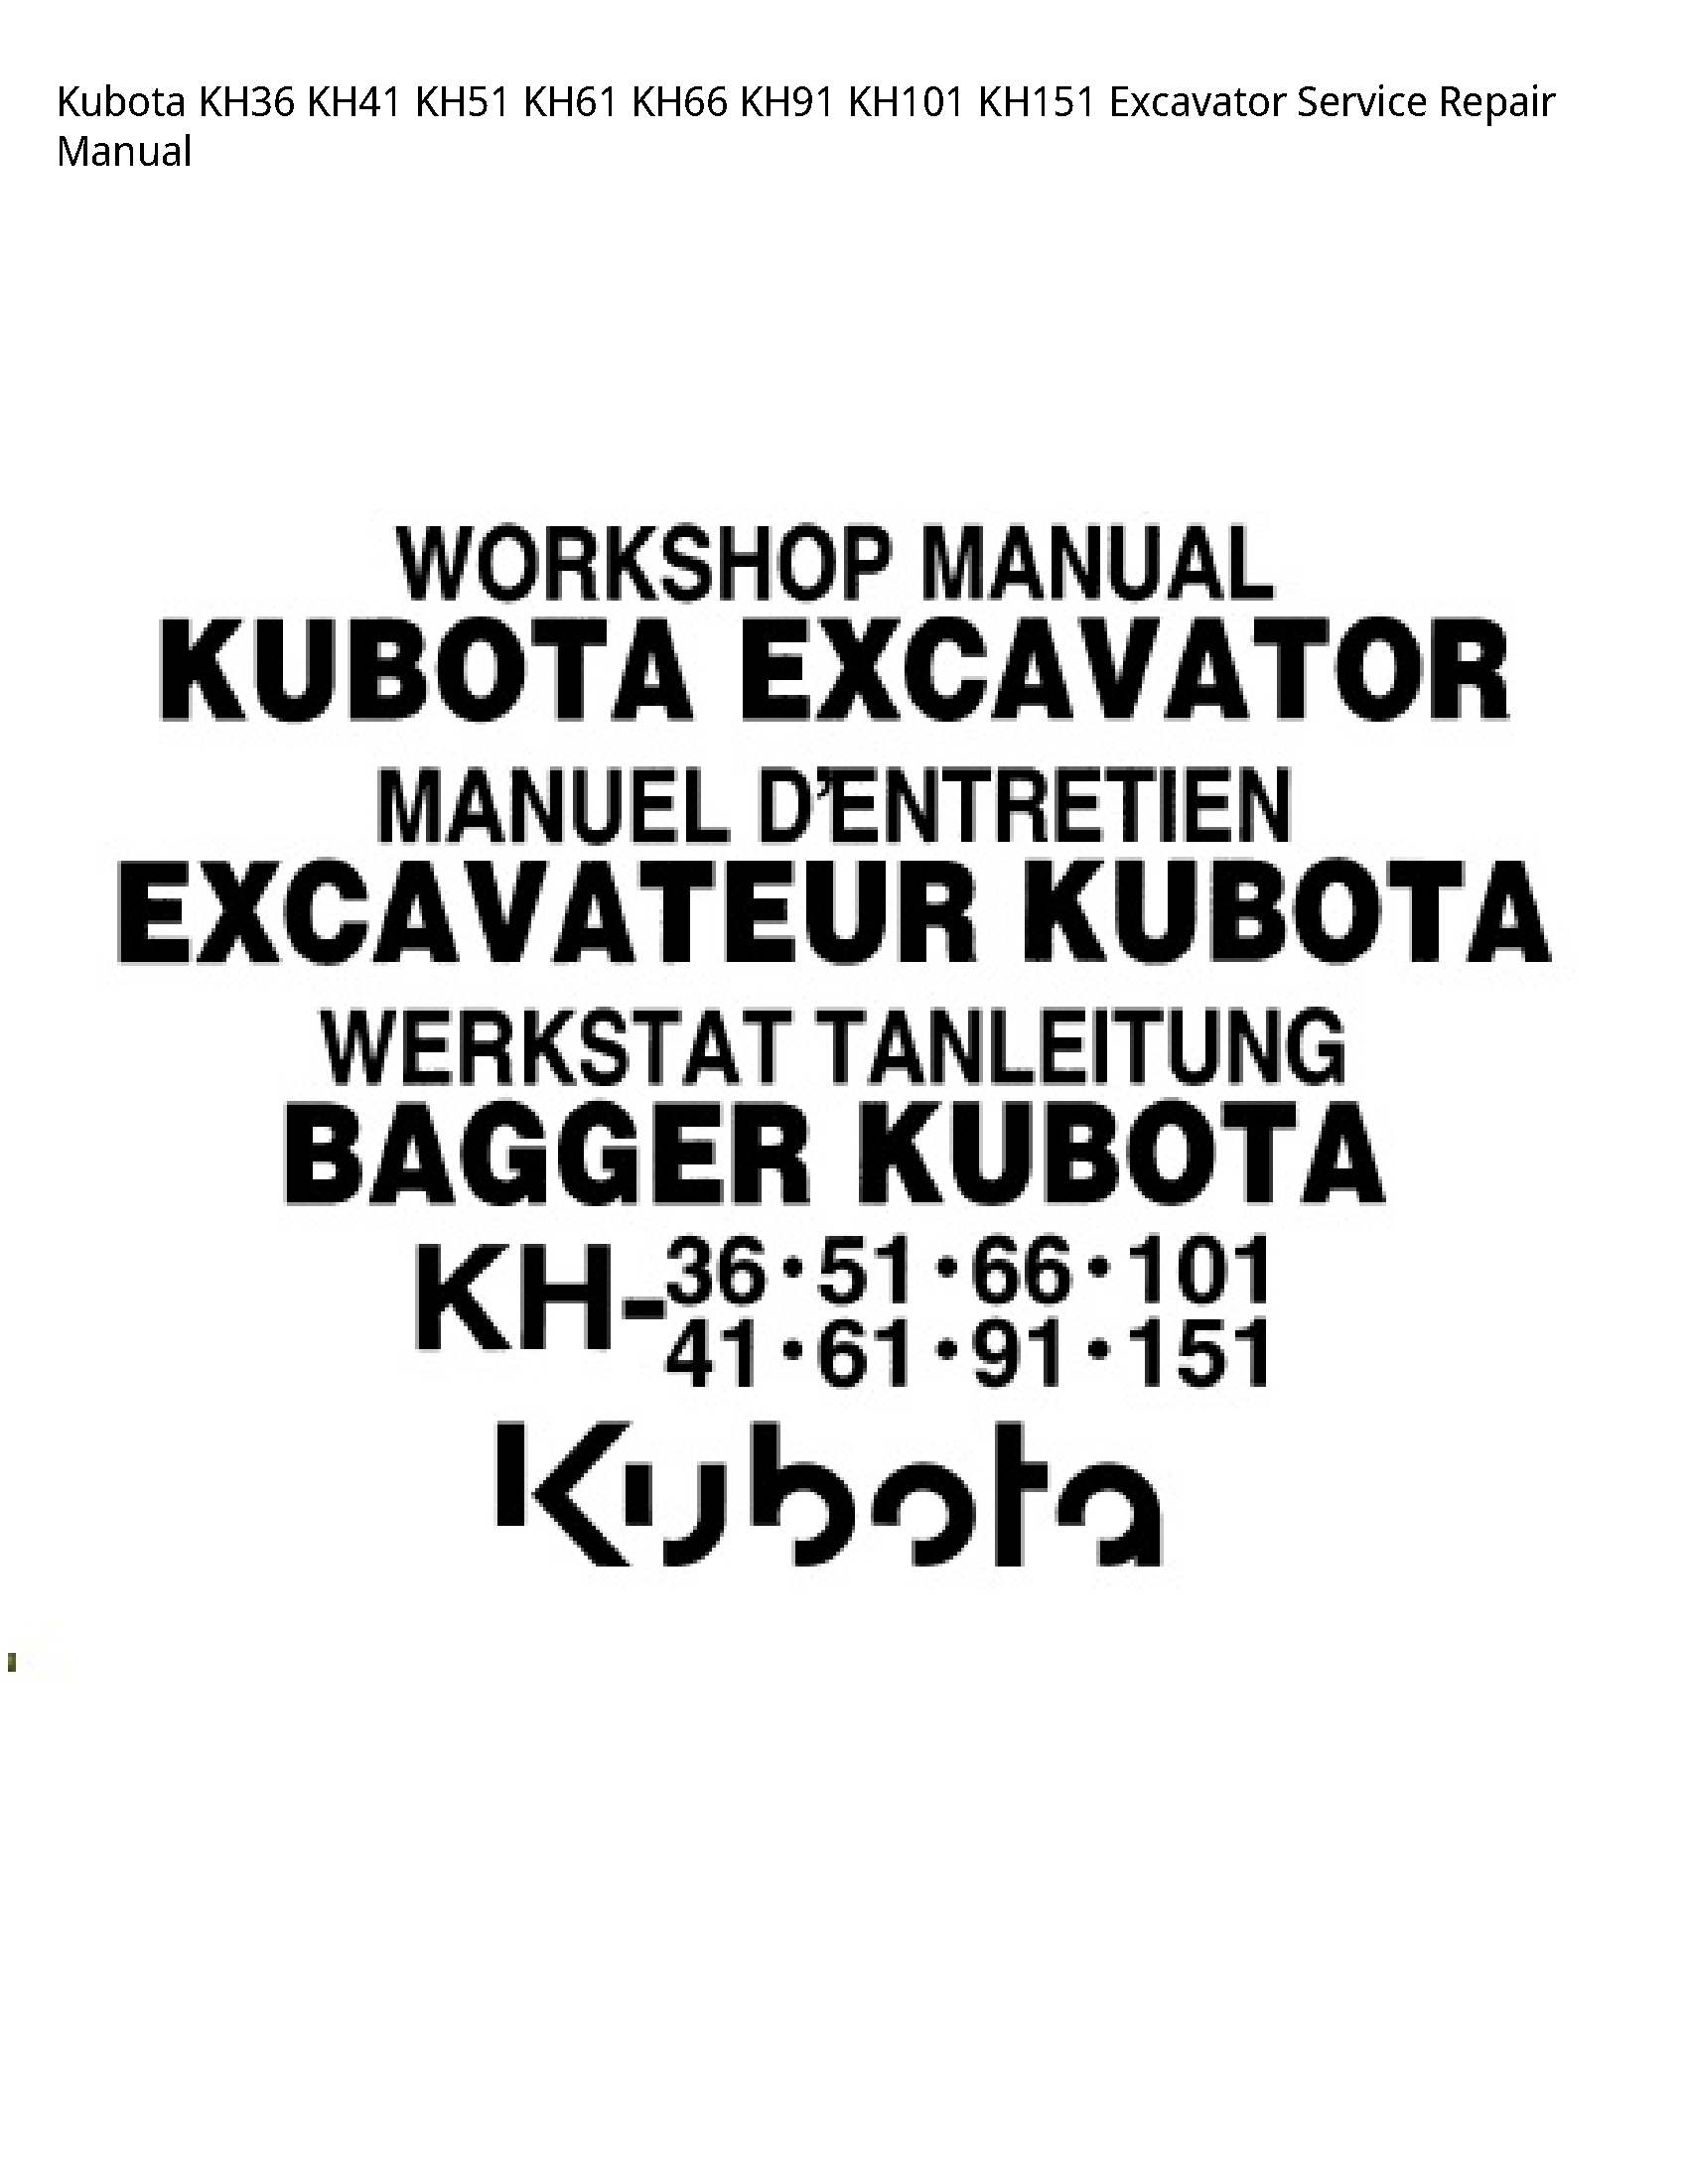 Kubota KH36 Excavator manual